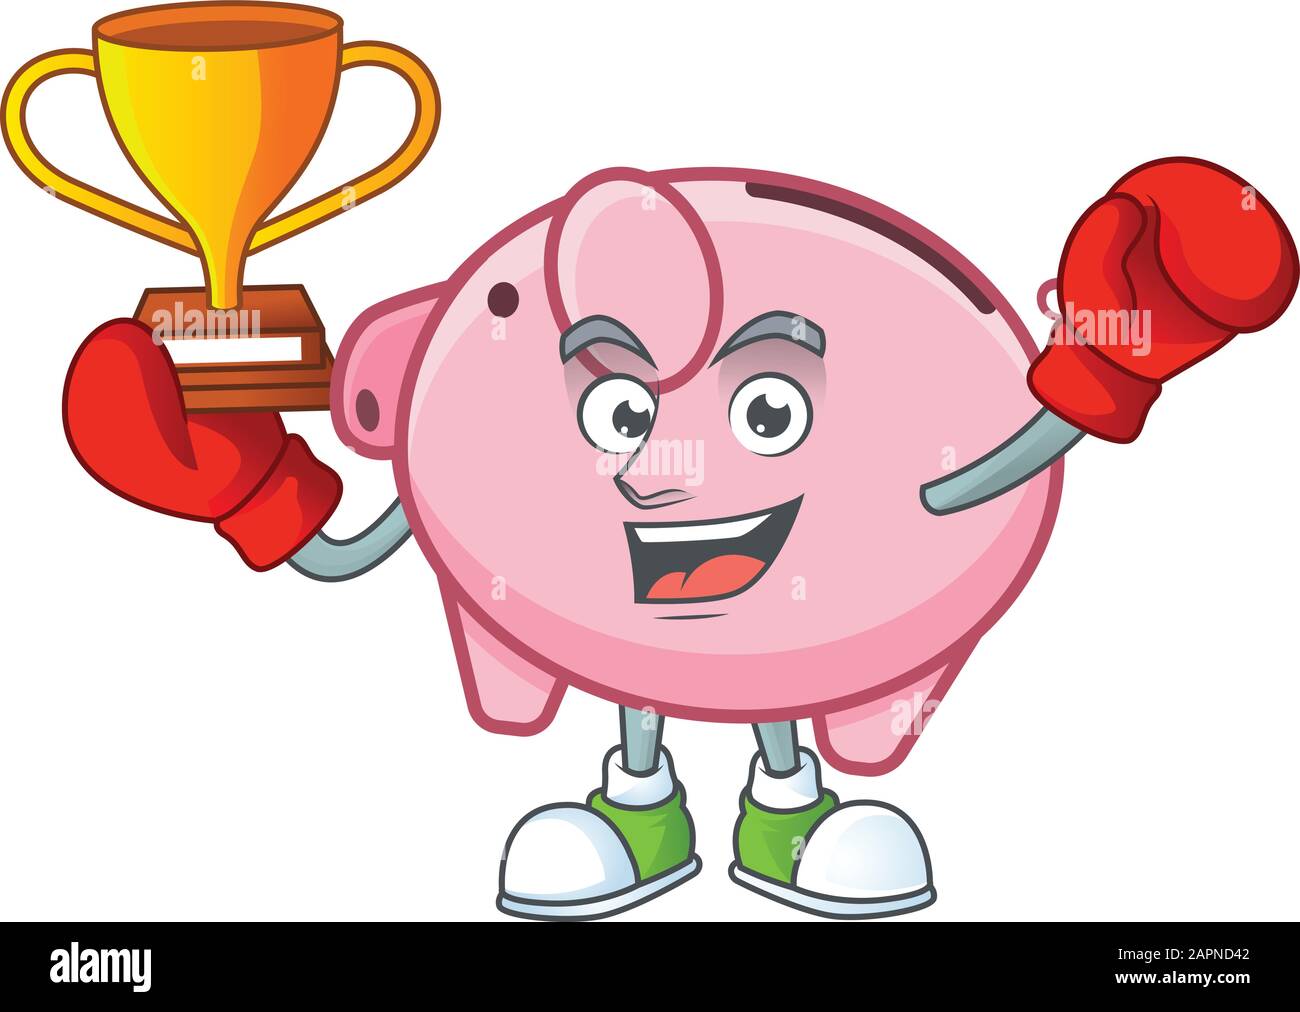 Fantastique Boxing gagnant de la banque de porc dans le style de dessin animé de mascotte Illustration de Vecteur